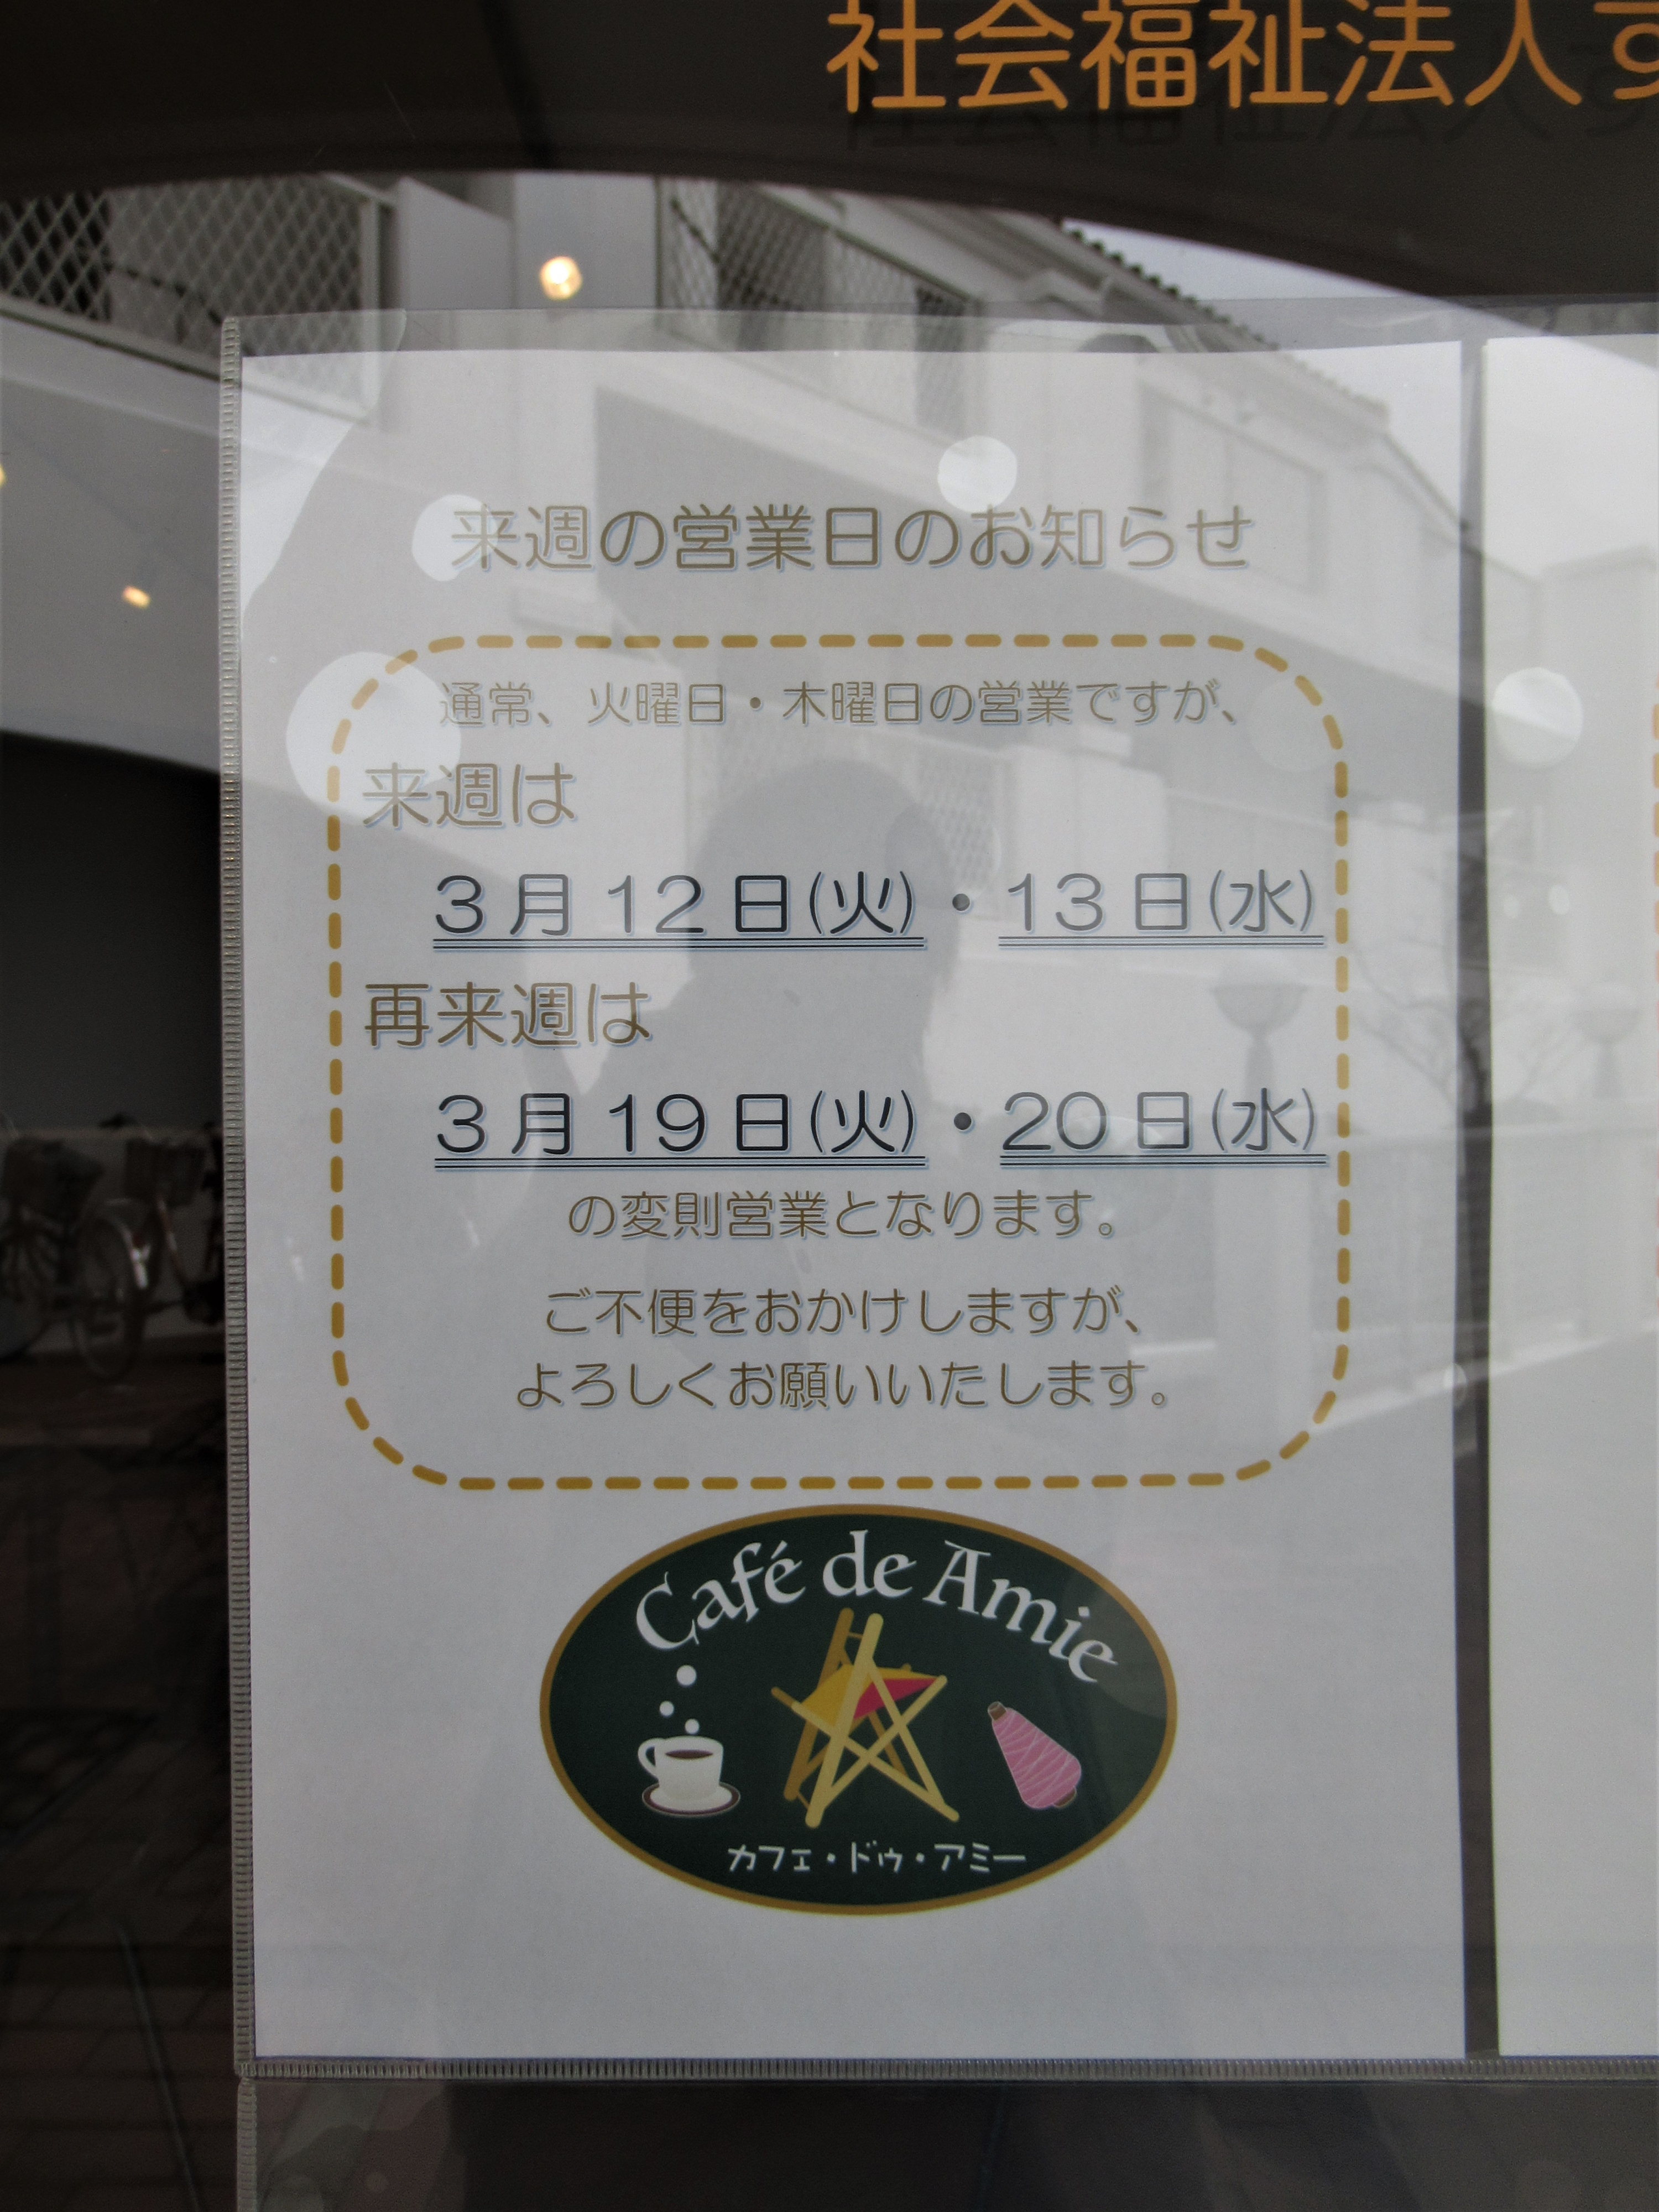 【航】カフェ・ドゥ・アミー3月の変則営業のお知らせ